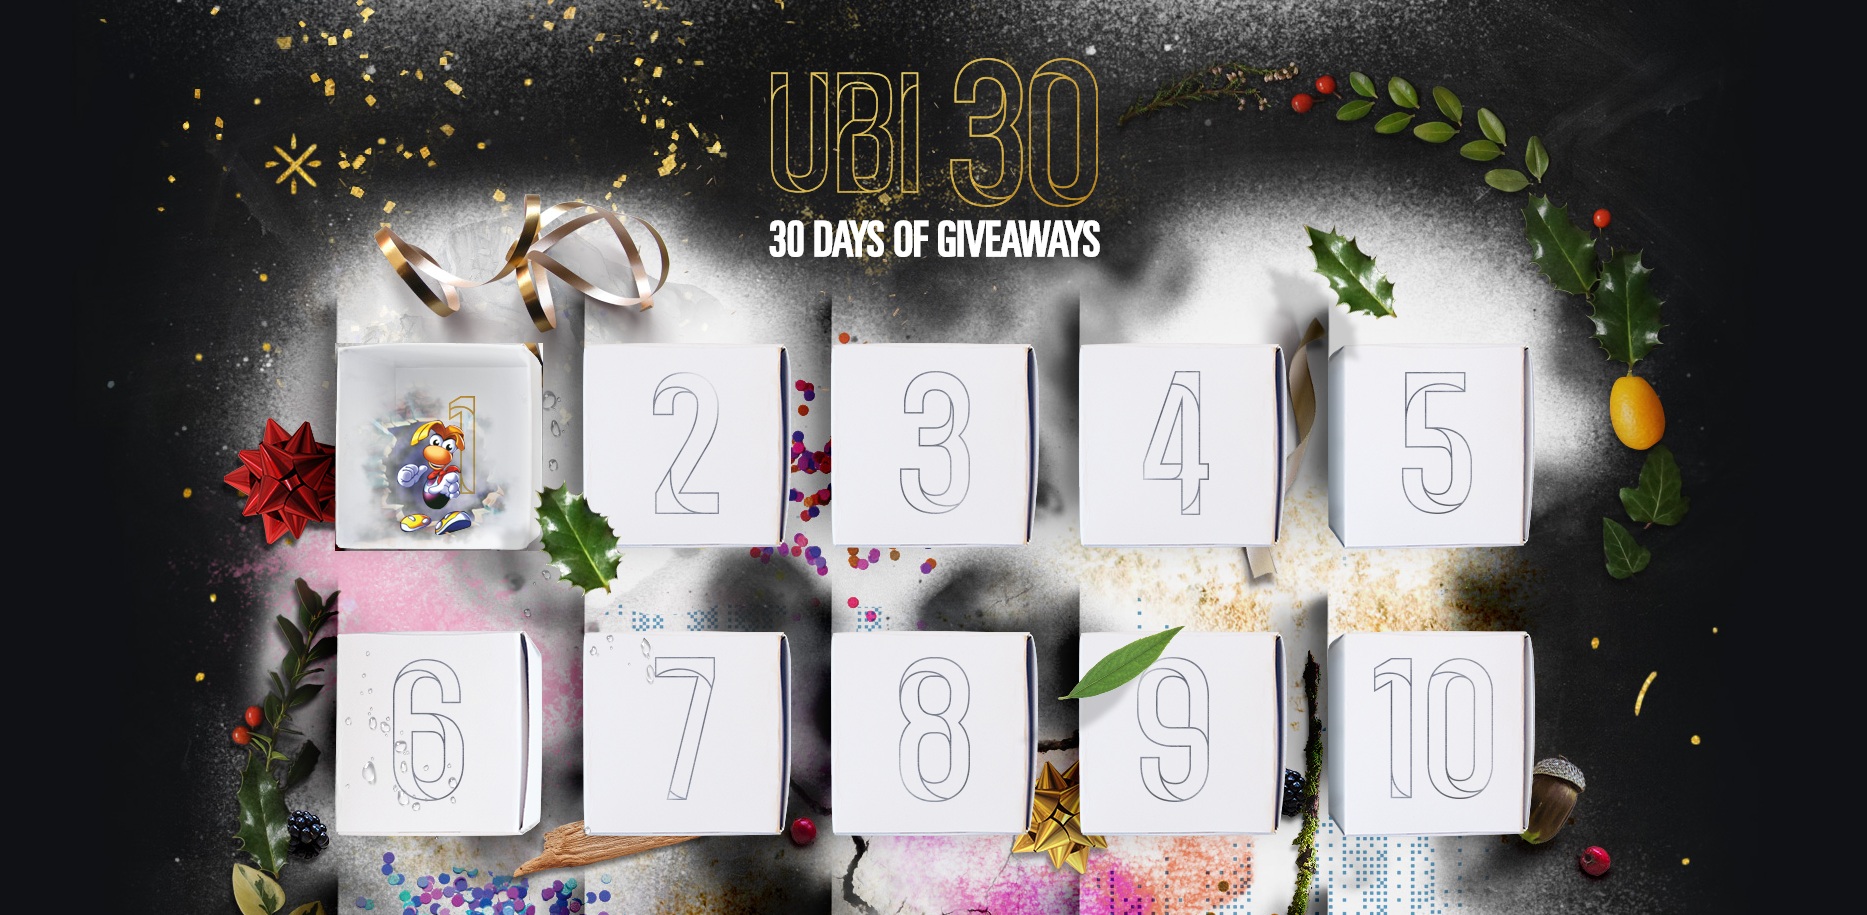 Mừng kỉ niệm 30 thành lập, Ubisoft phát động chiến dịch 30 ngày tặng quà cho fan